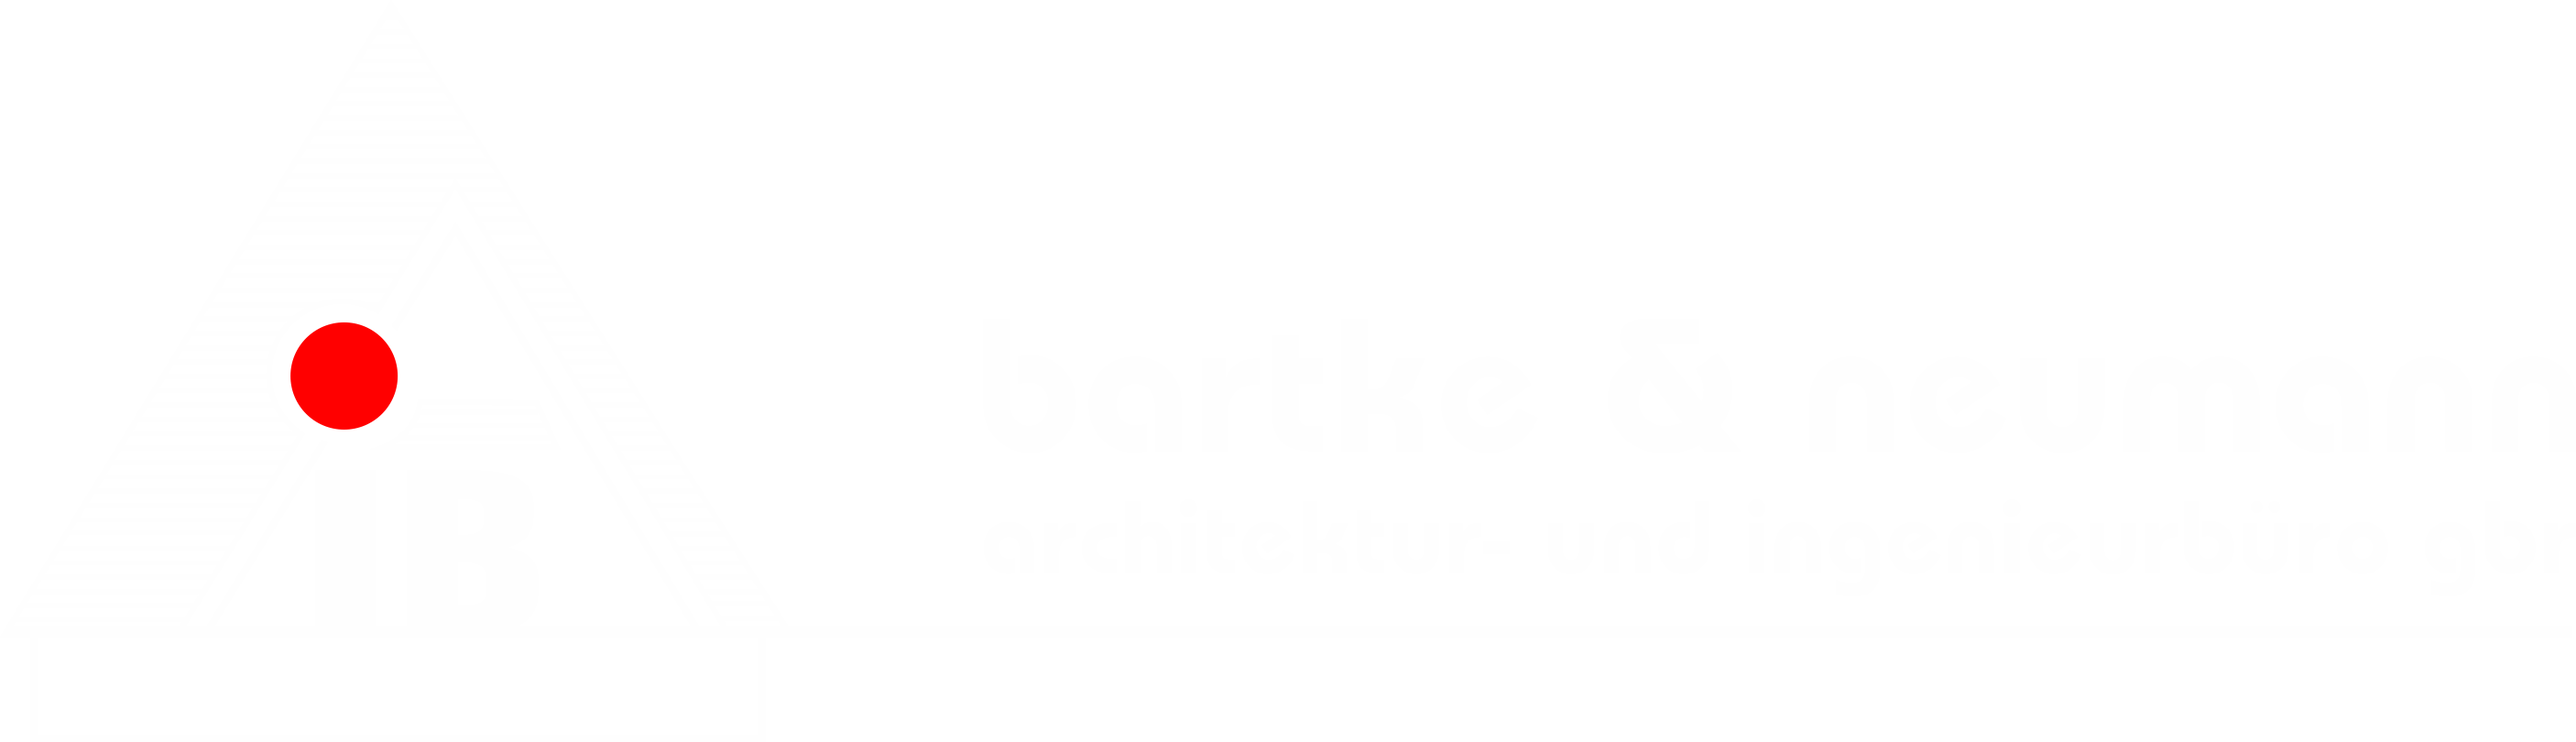 Architektur- und Ingenieurbüro Bartke & Neuman GbR